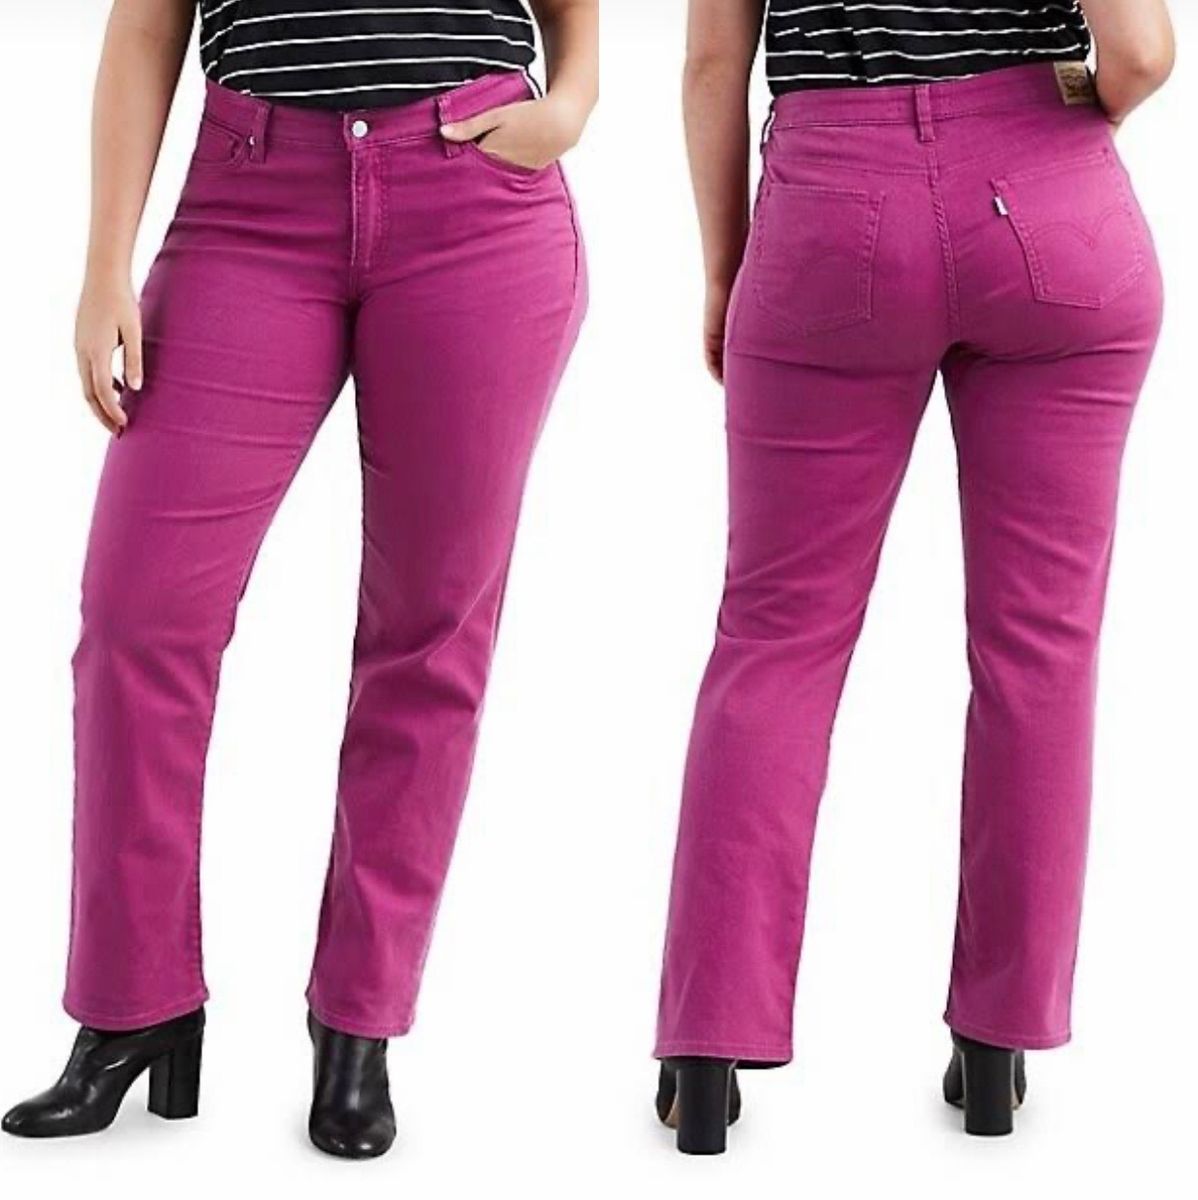 Calça Jeans Feminina da Levis Original 414 Classic Straight Plus Size  Importado., Calça Feminina Levi'S Nunca Usado 97085525